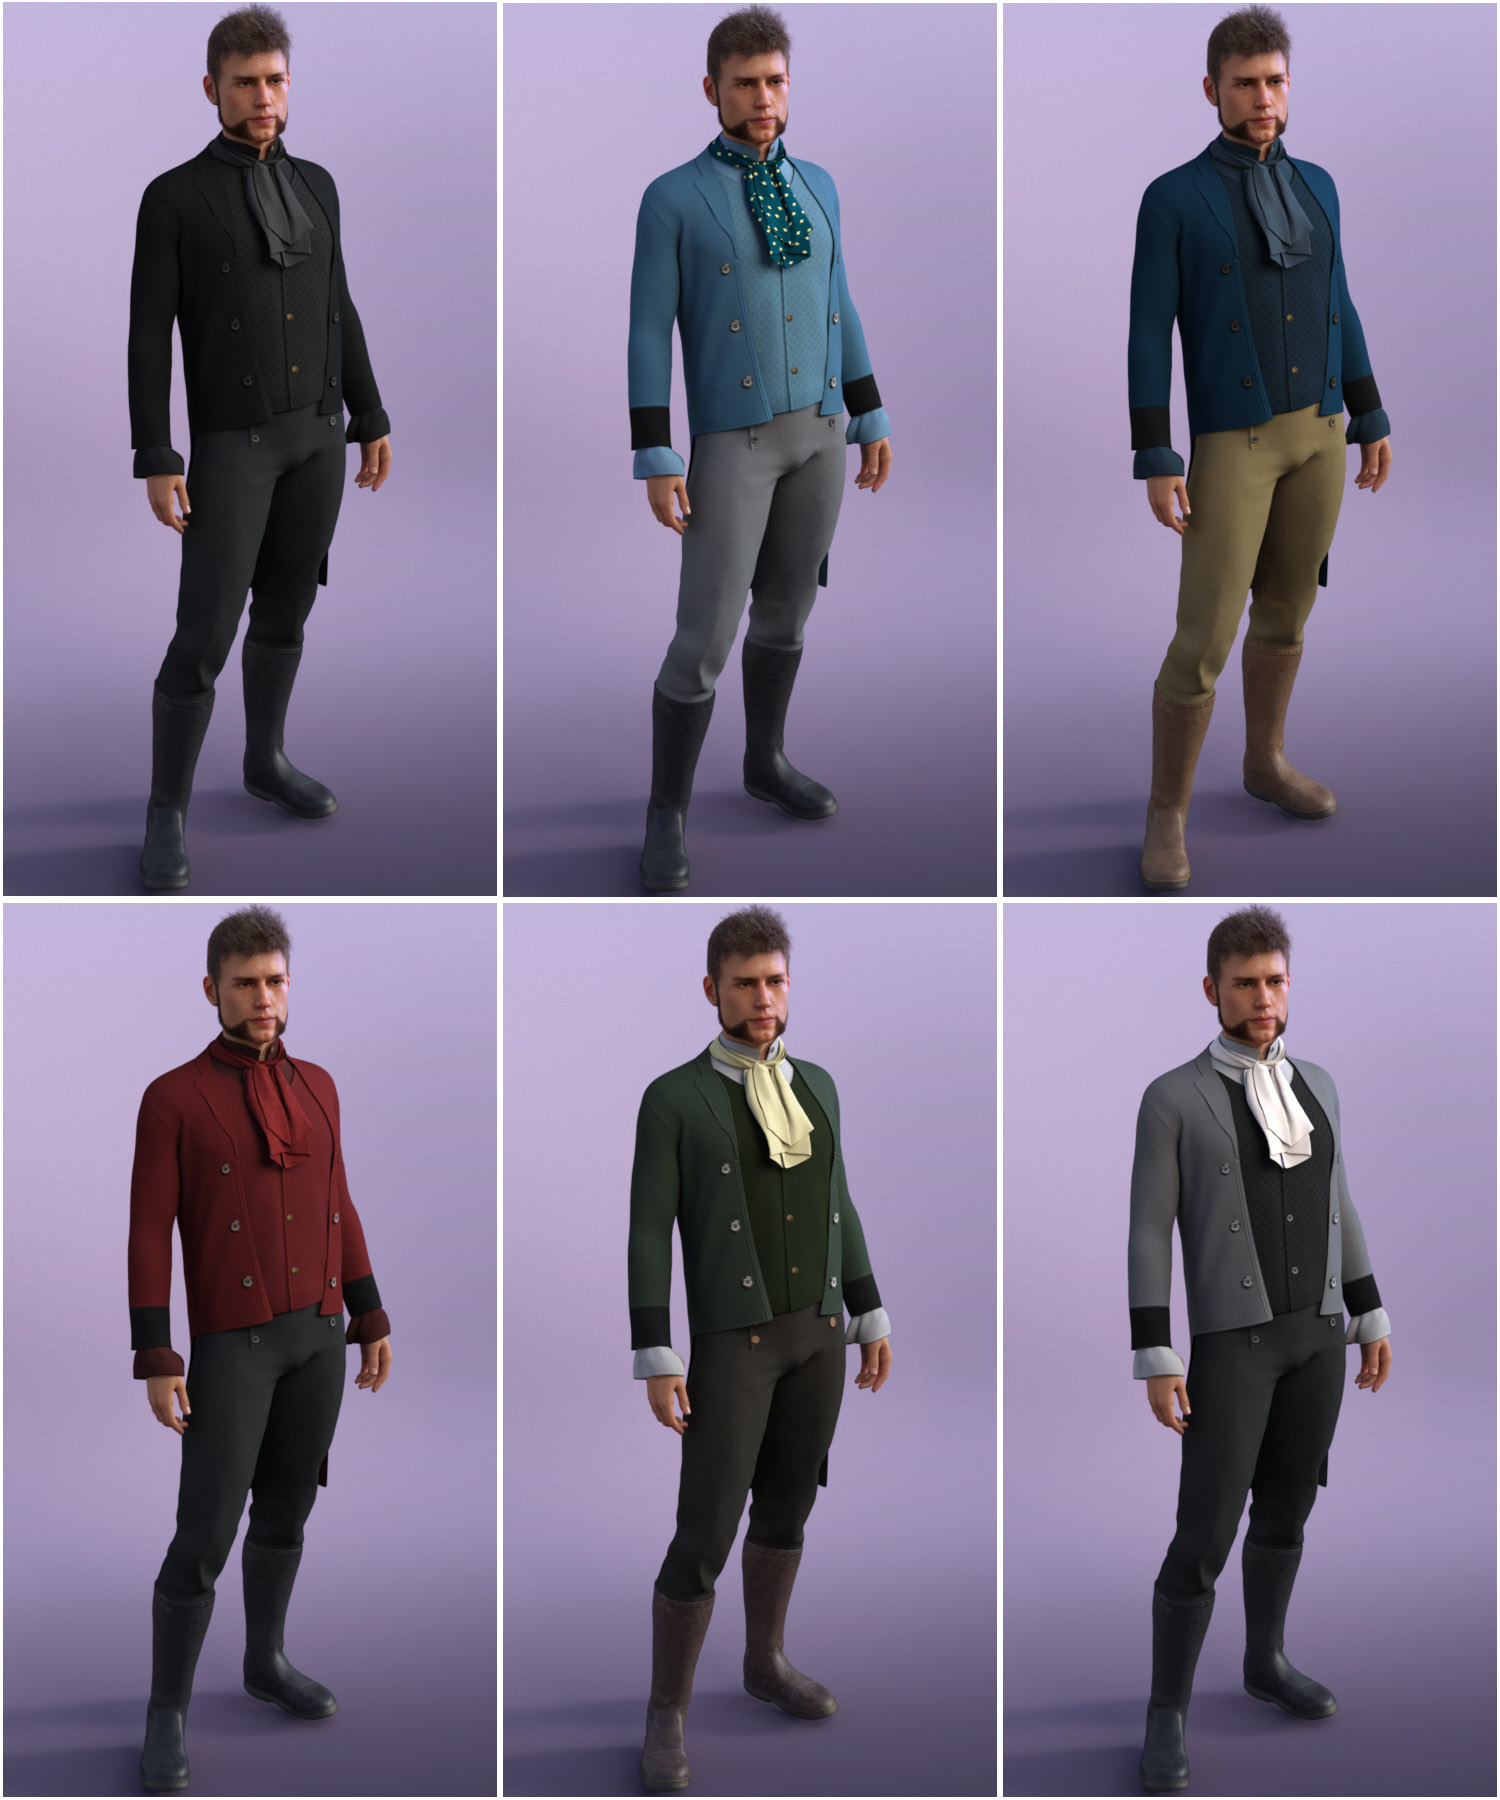 dForce Regency Outfit for Genesis 8 Male(s) by: Oskarsson, 3D Models by Daz 3D